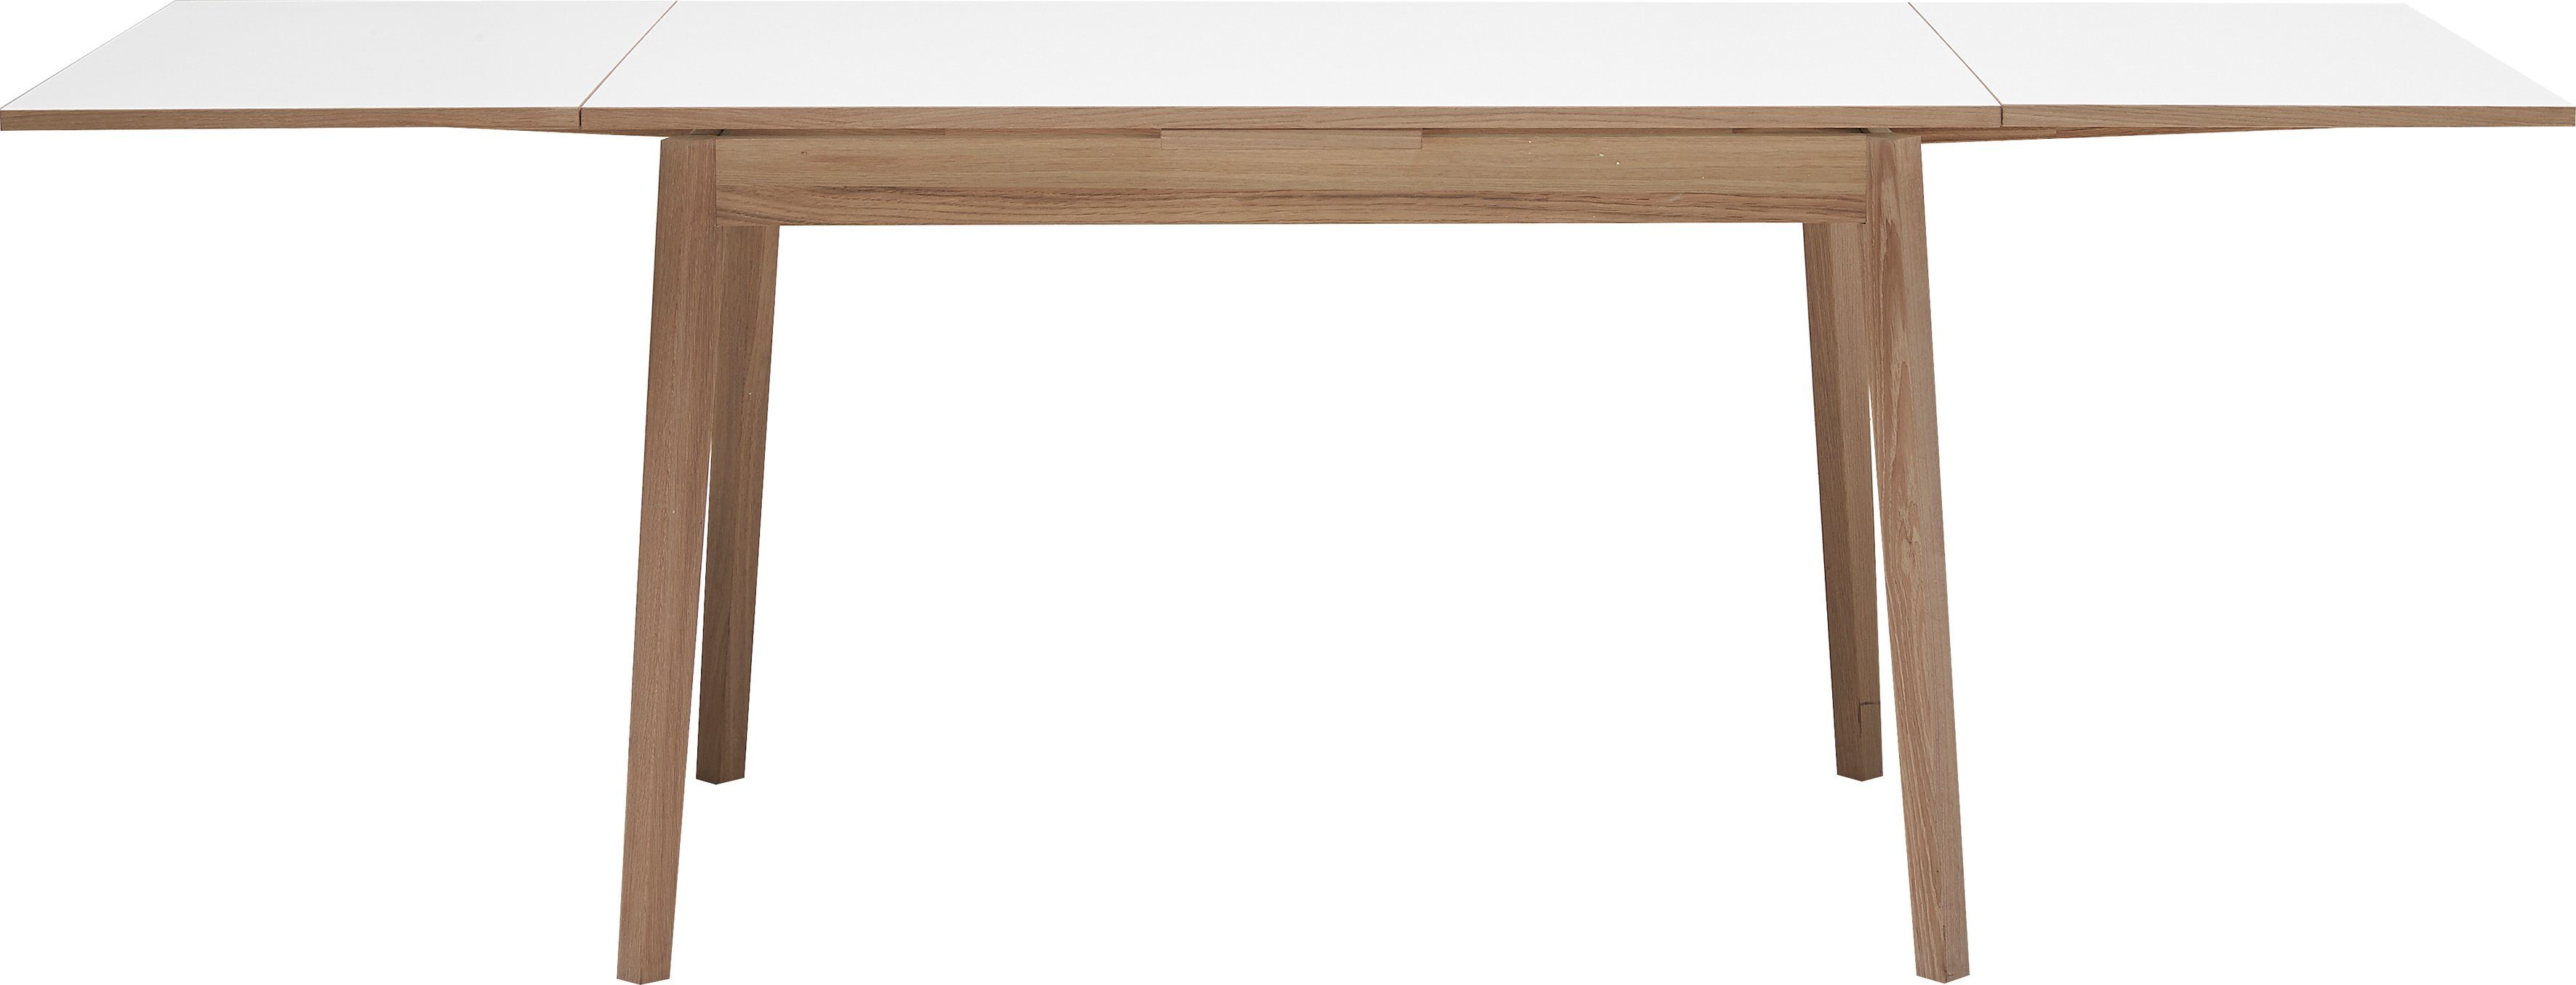 Hammel Furniture Esstisch Basic by Single, Tischplatte 180(280)x80 Massivholz in Melamin Gestell Weiß/Natur aus und Hammel cm, Naturfarben 